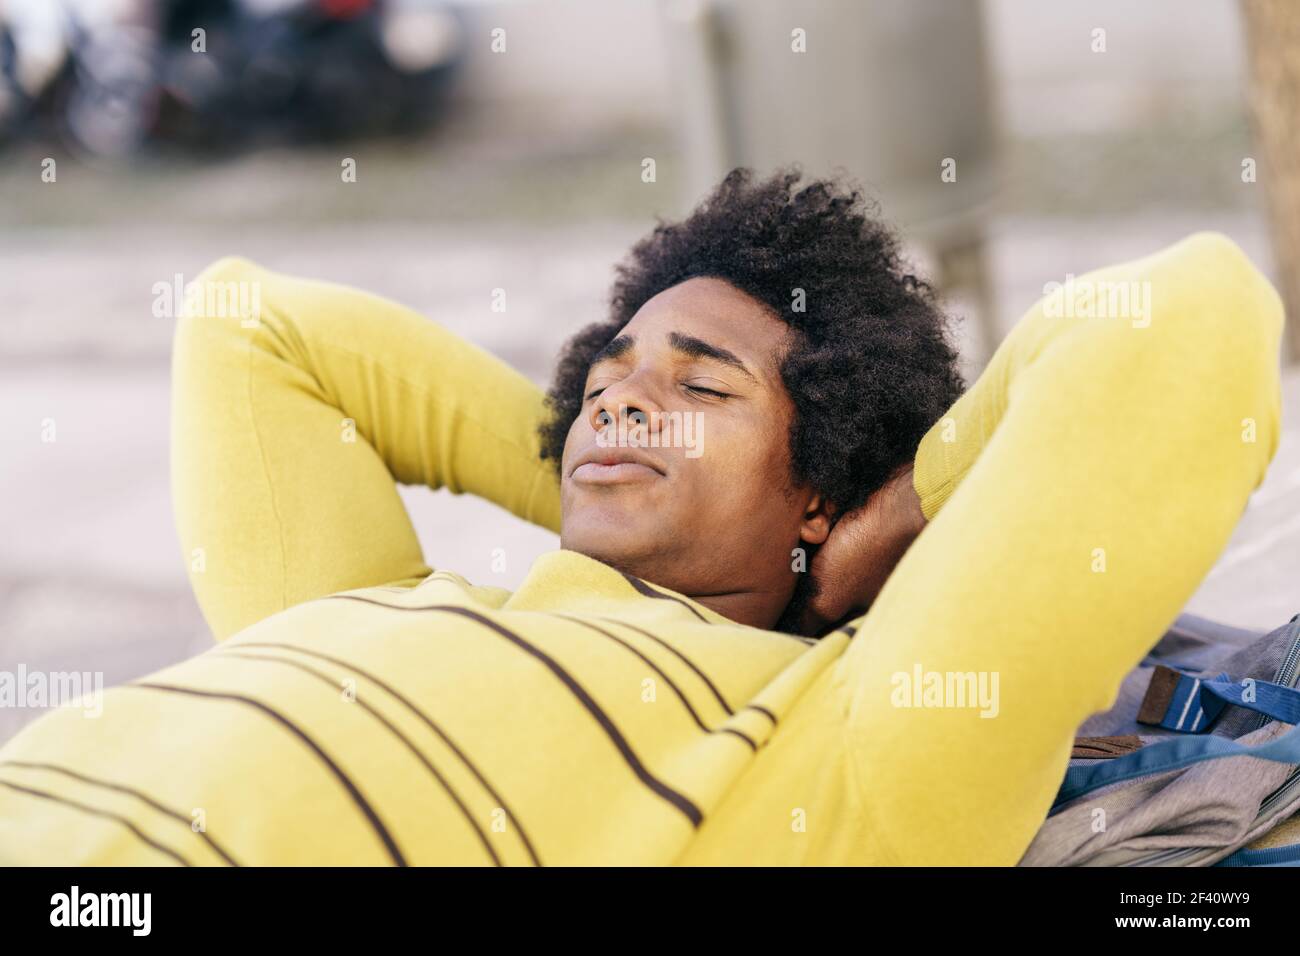 Touriste noir cubain avec des cheveux afro couchés sur le sol, sur son sac à dos, se reposant de son voyage à Grenade, Andalousie, Espagne. Touriste noir avec des cheveux afro couchés au sol à l'extérieur. Banque D'Images